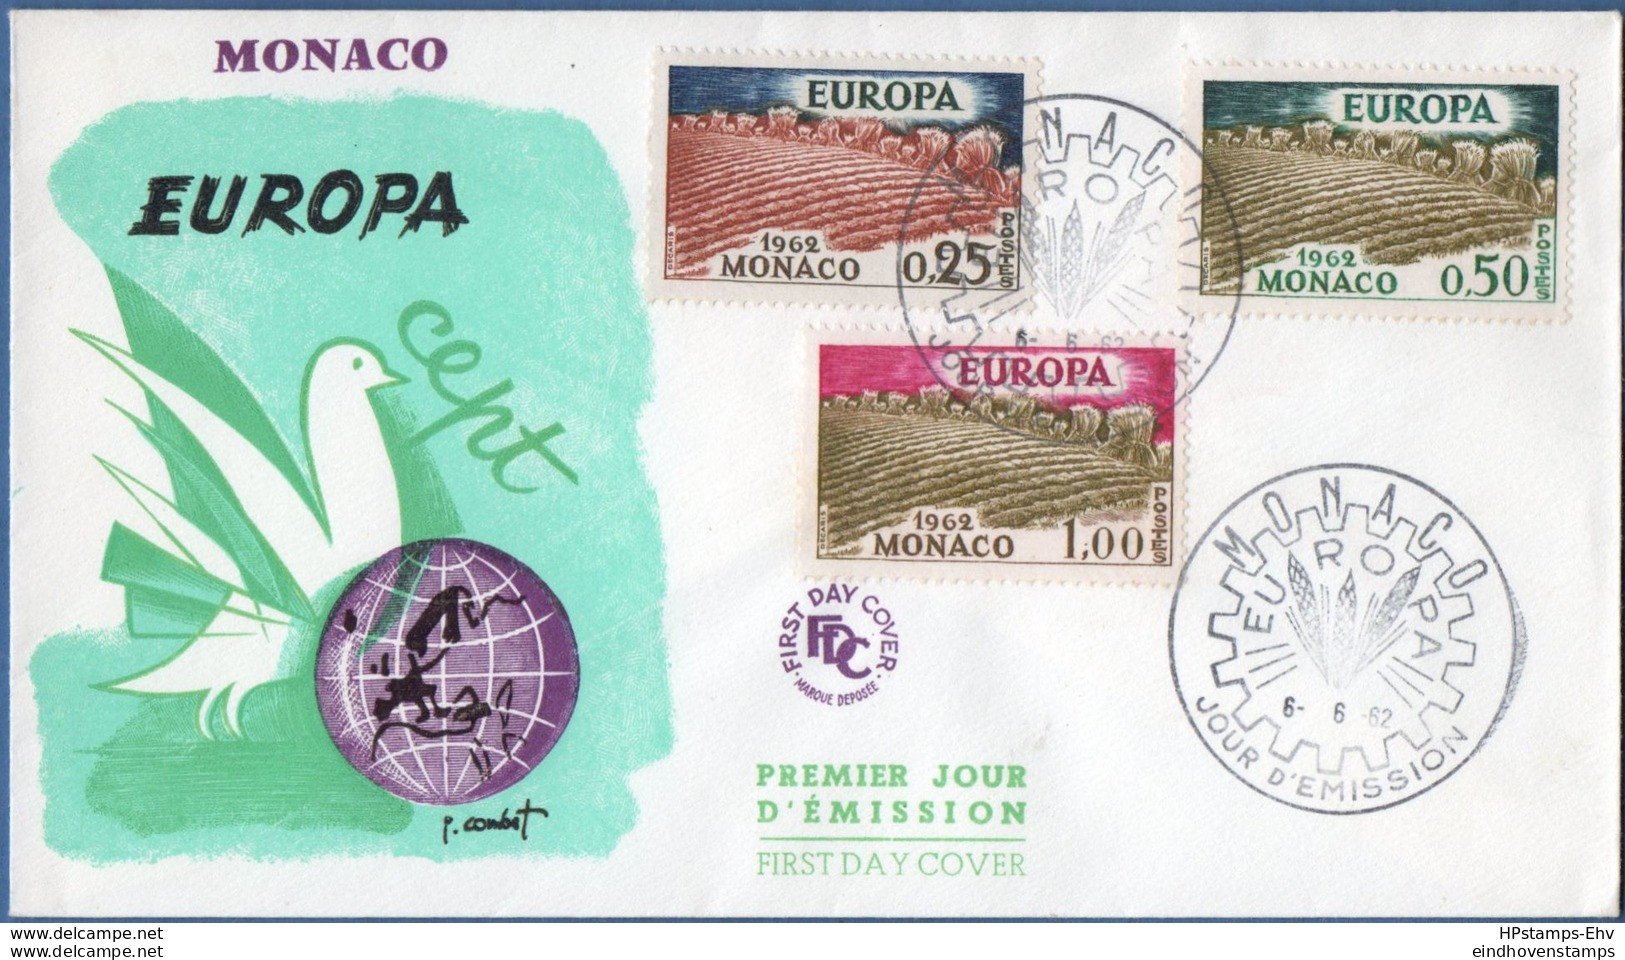 Monaco 1962 Europa Cept FDC Lower Values 2002.2849 - 1962